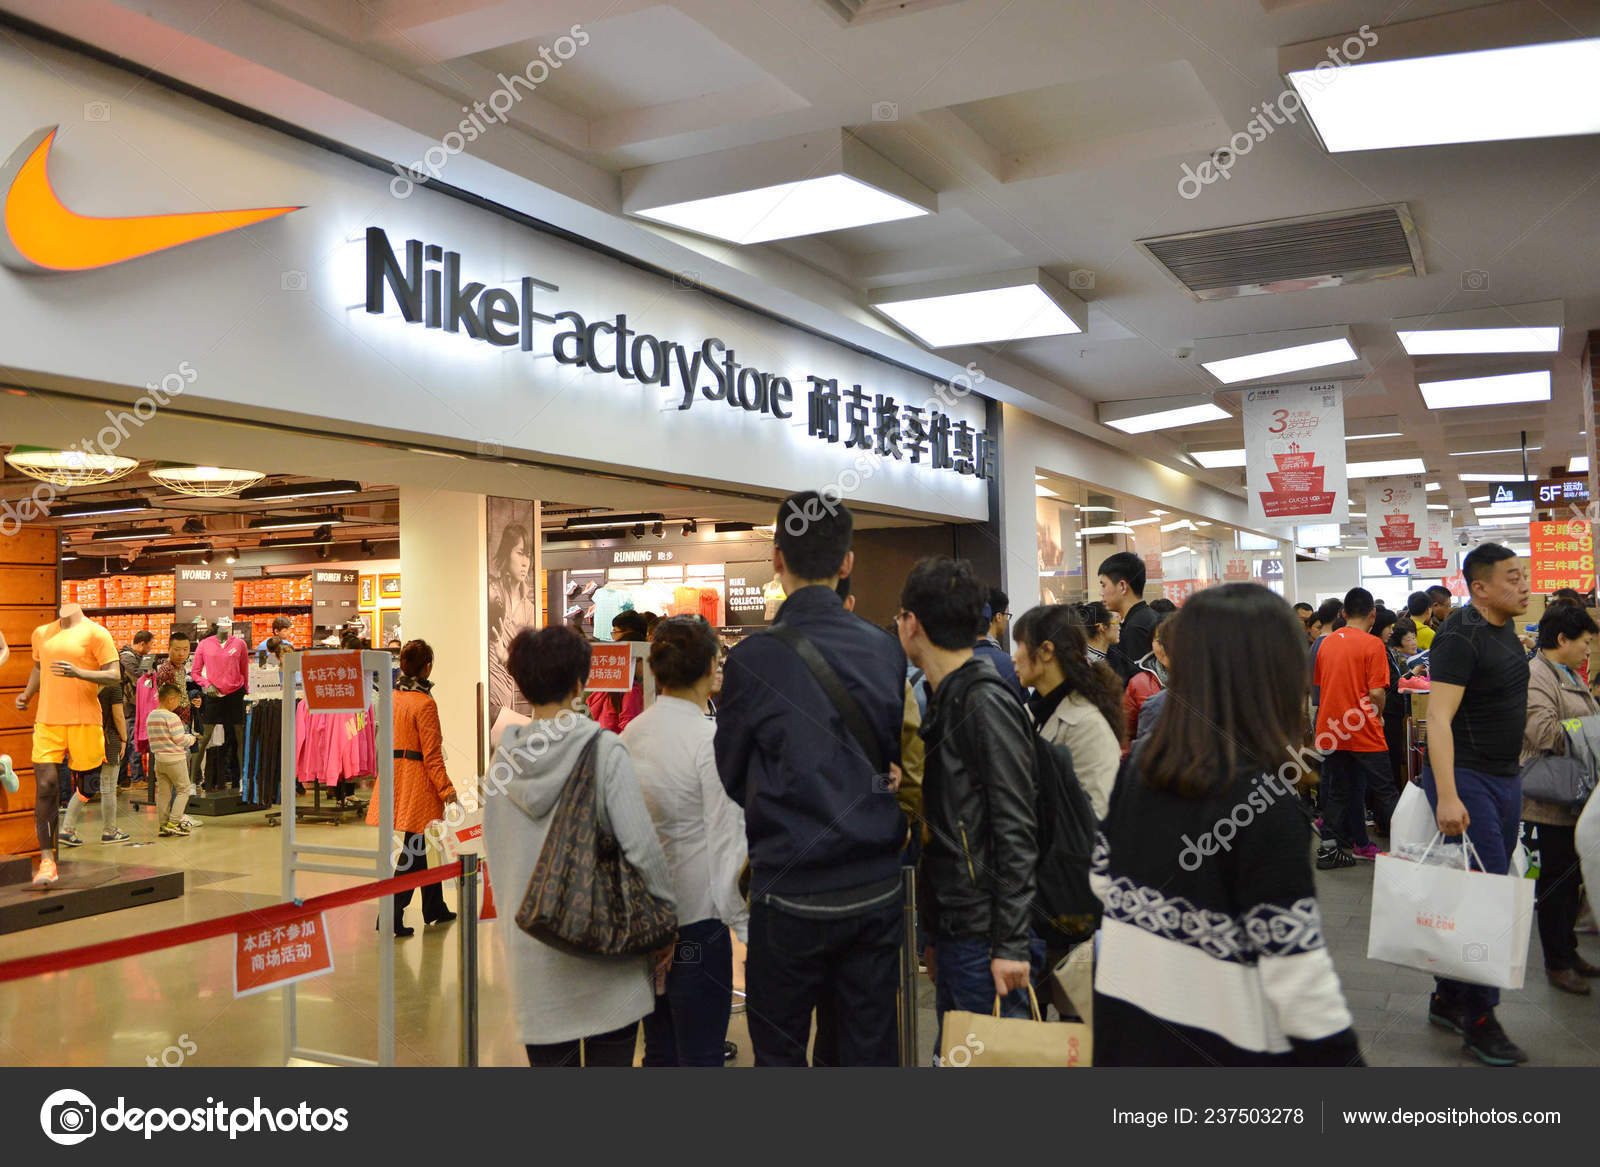 Chinos Hacen Frente Una Tienda Factory Store — Foto editorial de stock © ChinaImages #237503278